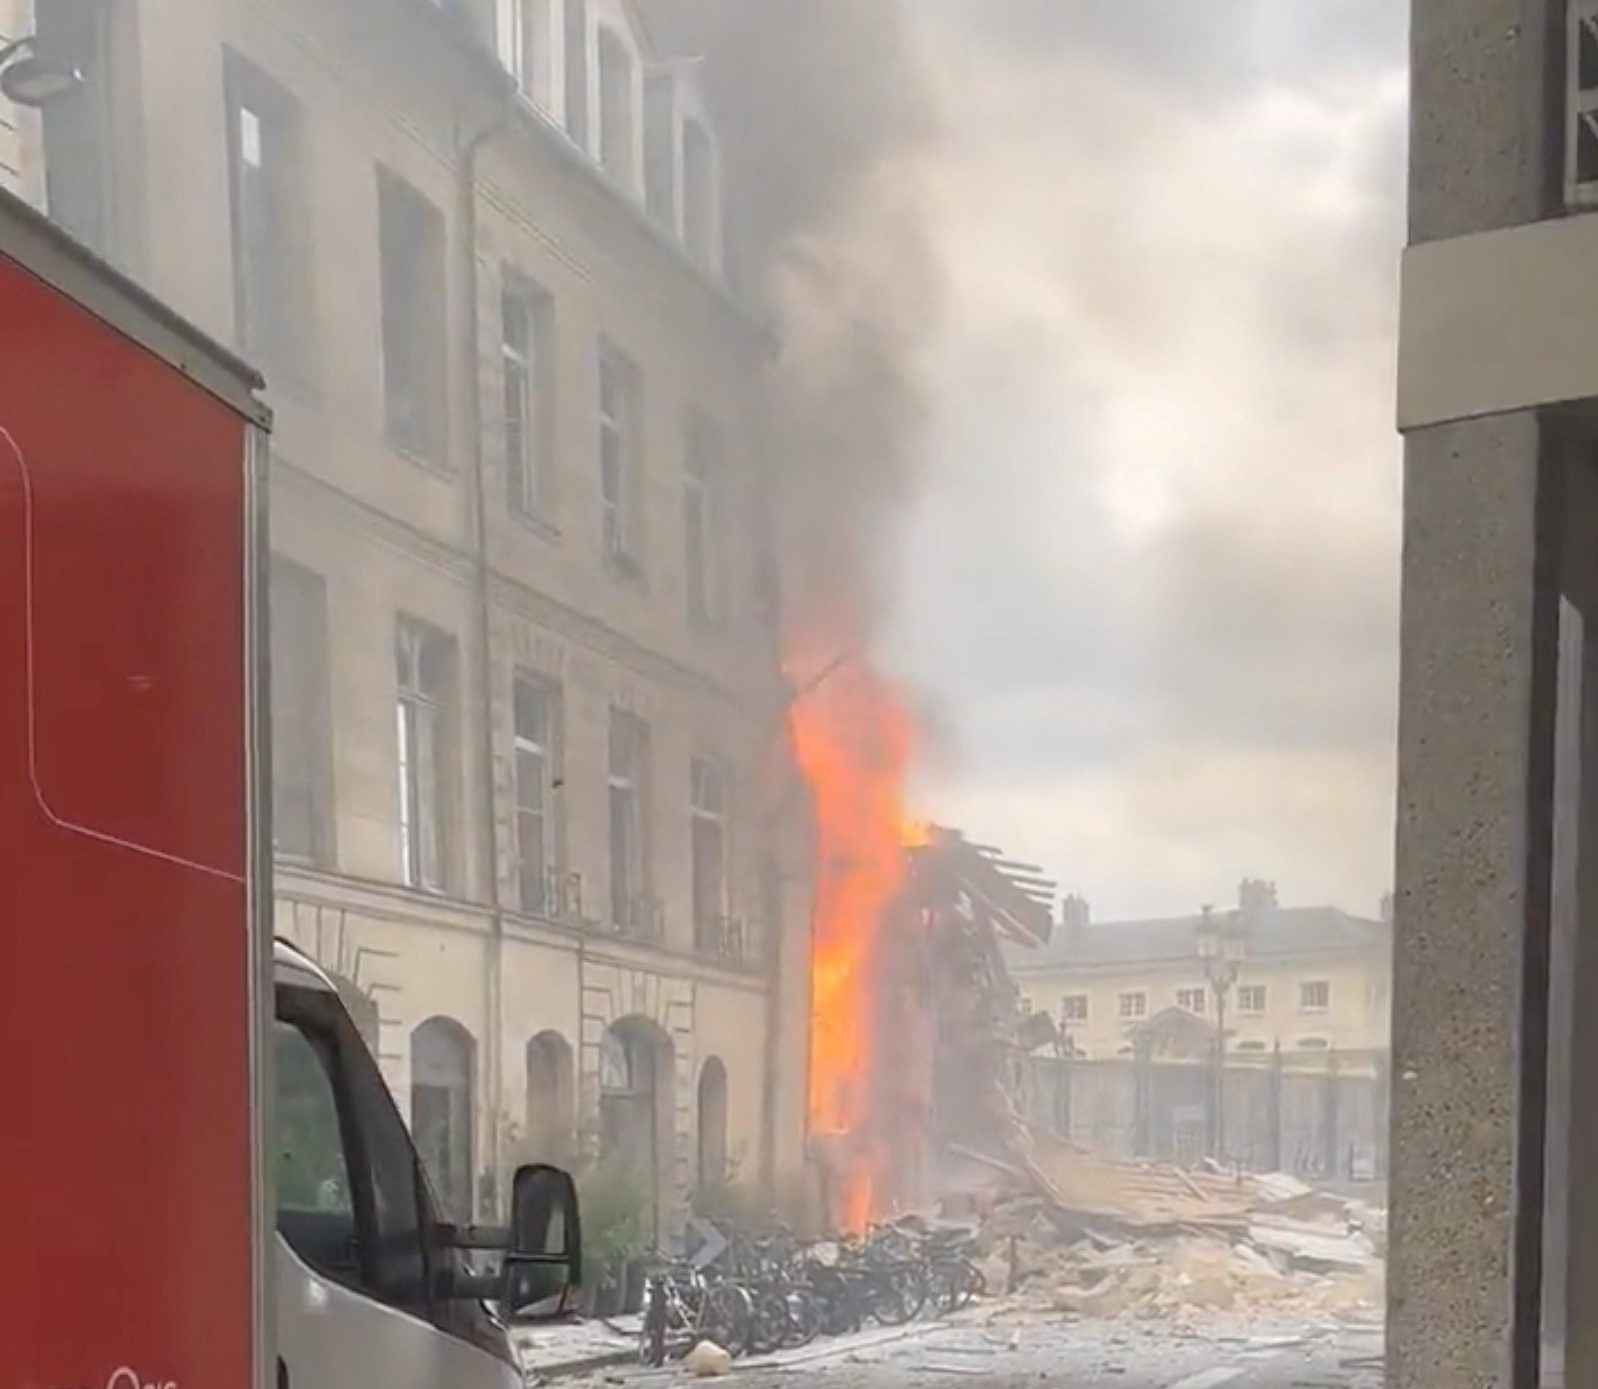 Έκρηξη στο Παρίσι: Δύο αγνοούμενοι στα ερείπια και δεκάδες τραυματίες - «Νόμιζα πως ήταν έκρηξη βόμβας»